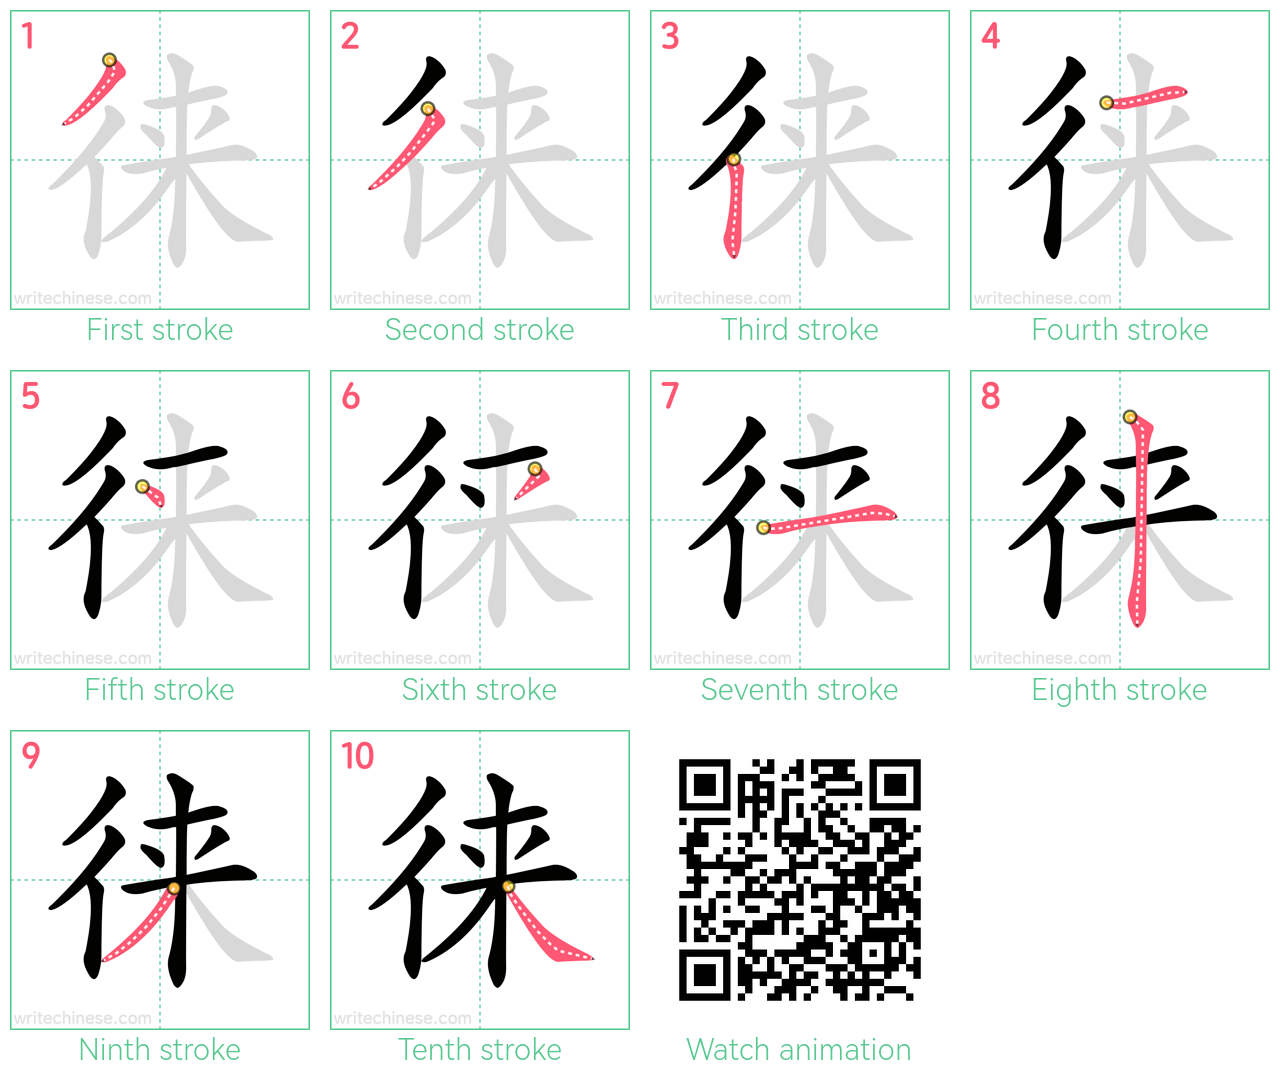 徕 step-by-step stroke order diagrams